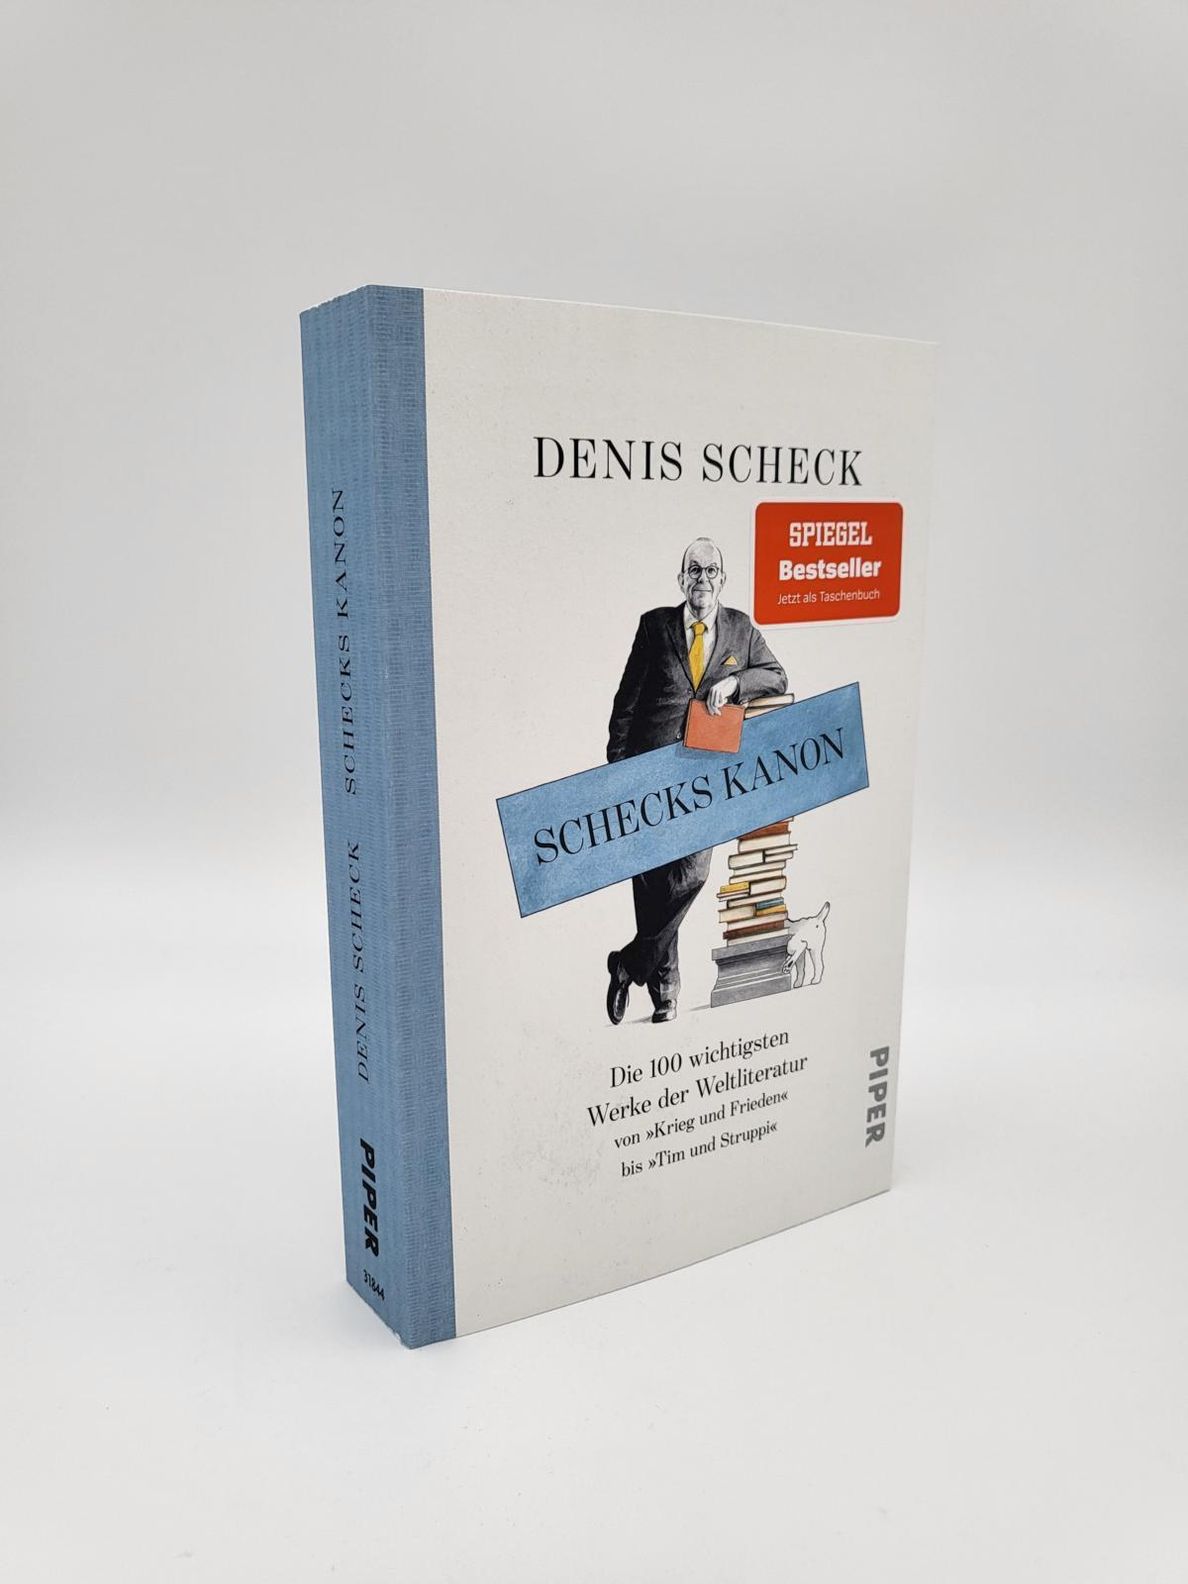 Schecks Kanon Buch von Denis Scheck versandkostenfrei bei Weltbild.at